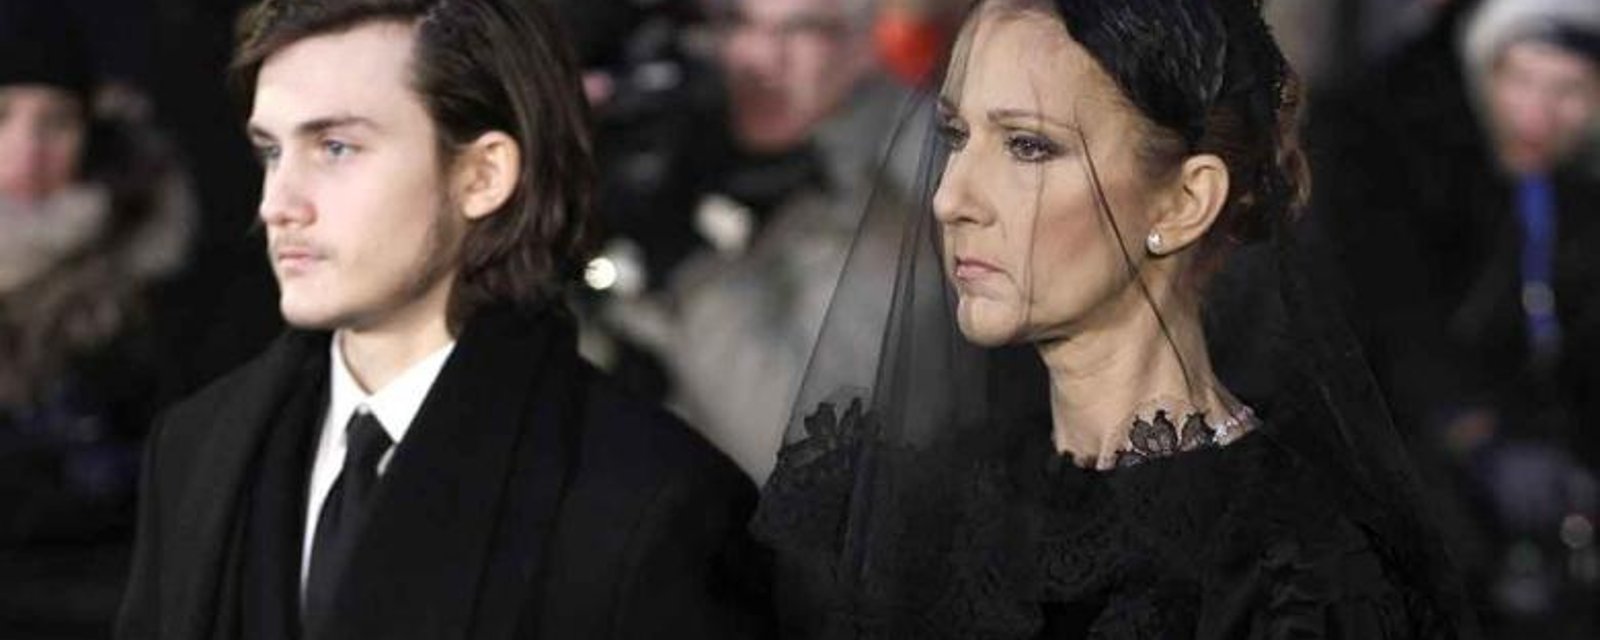 Voici pourquoi Céline Dion n'était pas présente aux funérailles de son frère